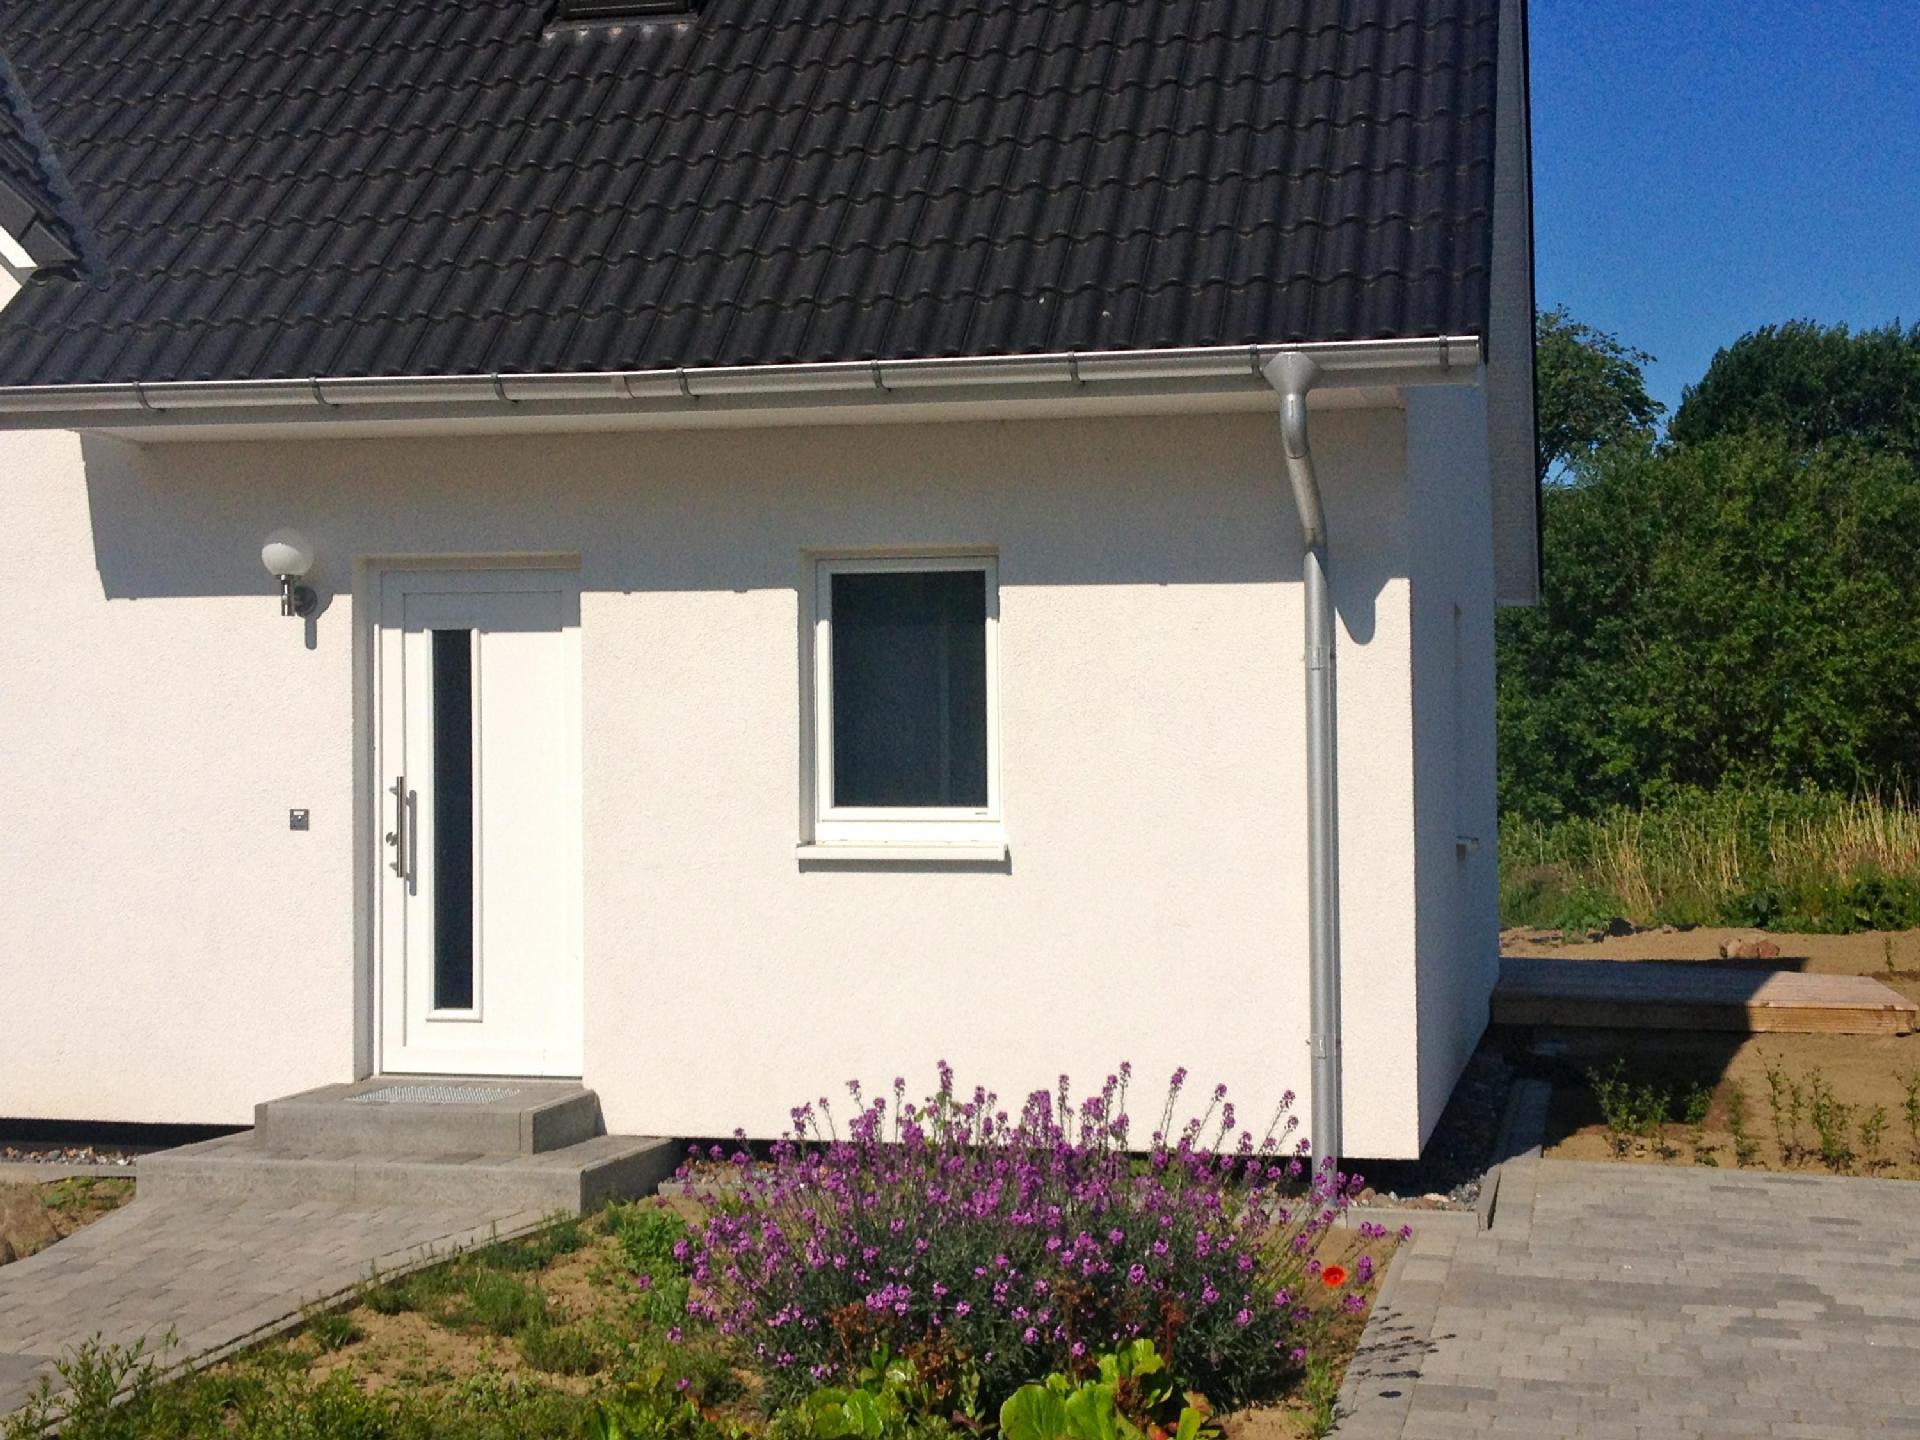 Wohnung in Patzig mit Terrasse Ferienhaus in Mecklenburg Vorpommern